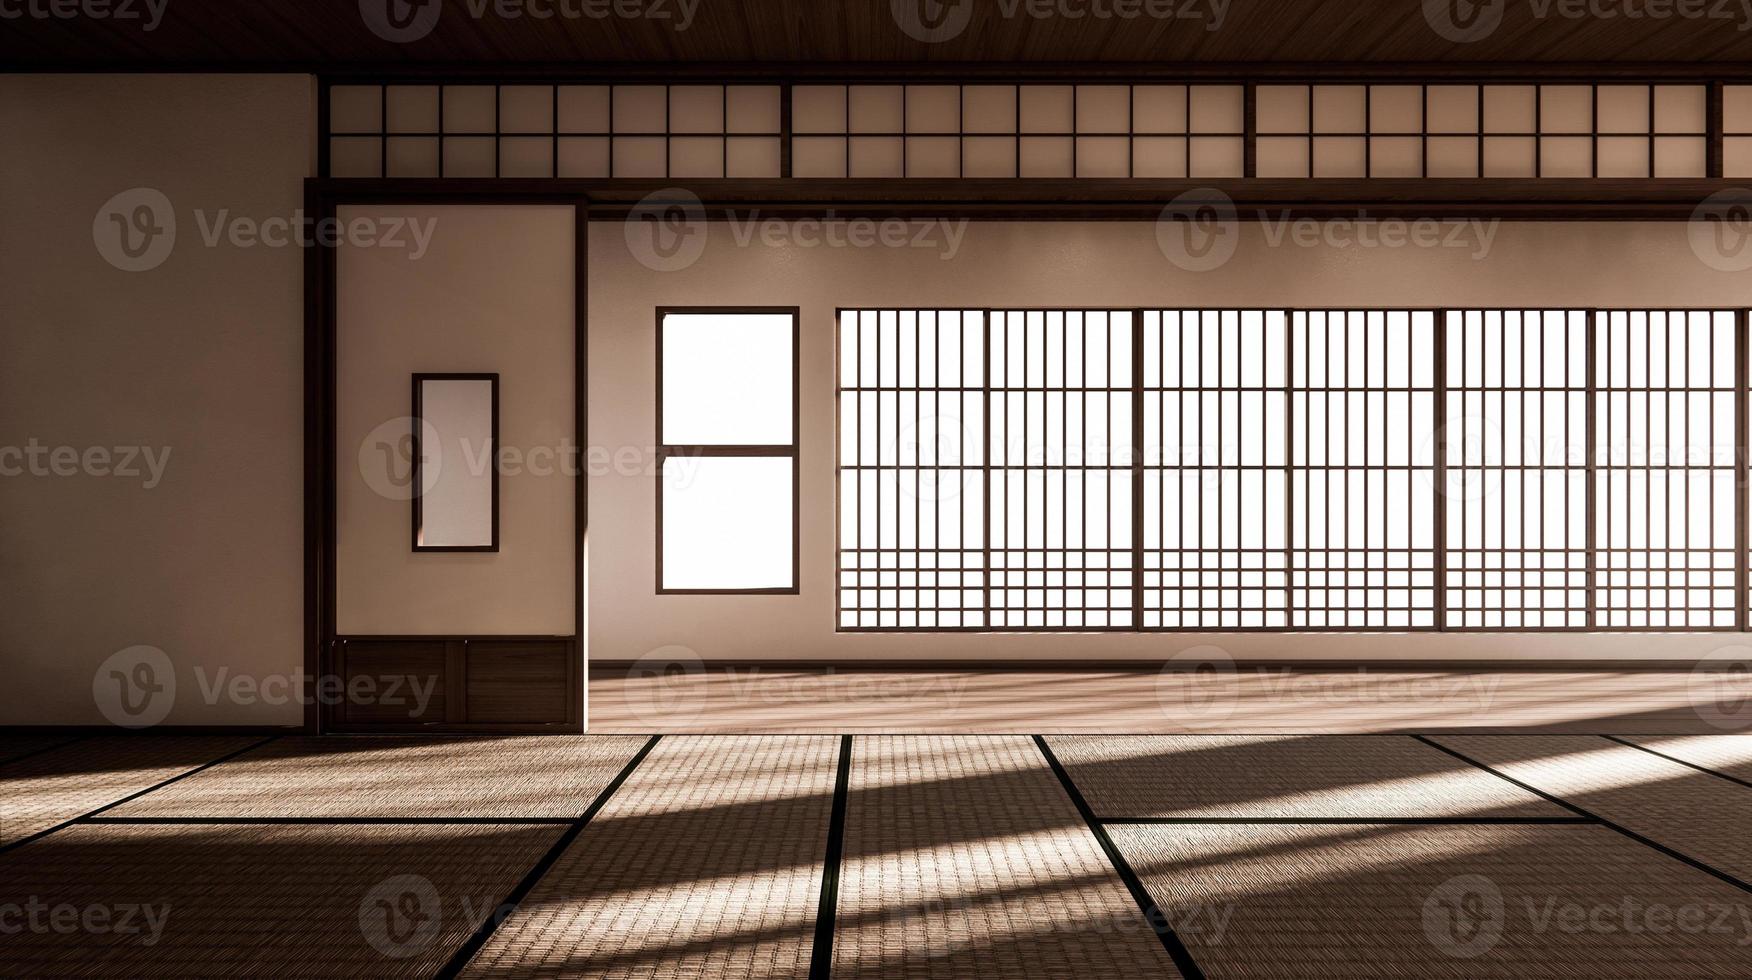 de kamer is ruim van opzet in de Japanse stijl en licht in natuurlijke tinten. 3D-rendering foto